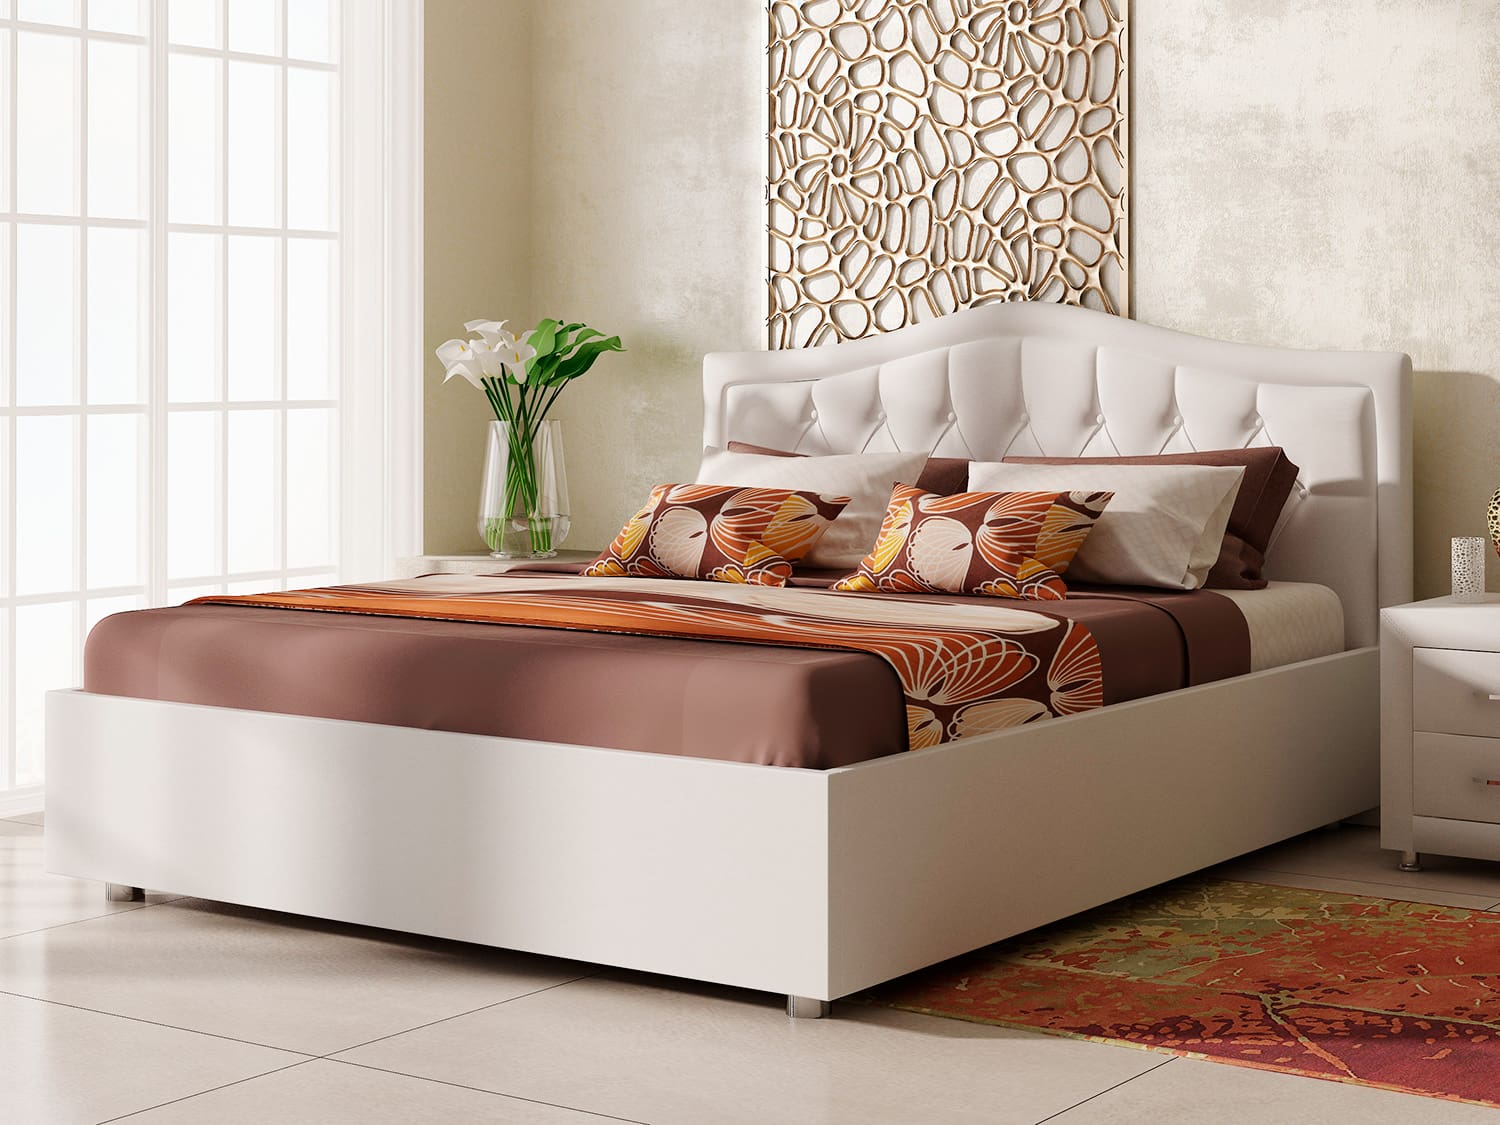 Toskana – стильная кровать со слегка изогнутой спинкой